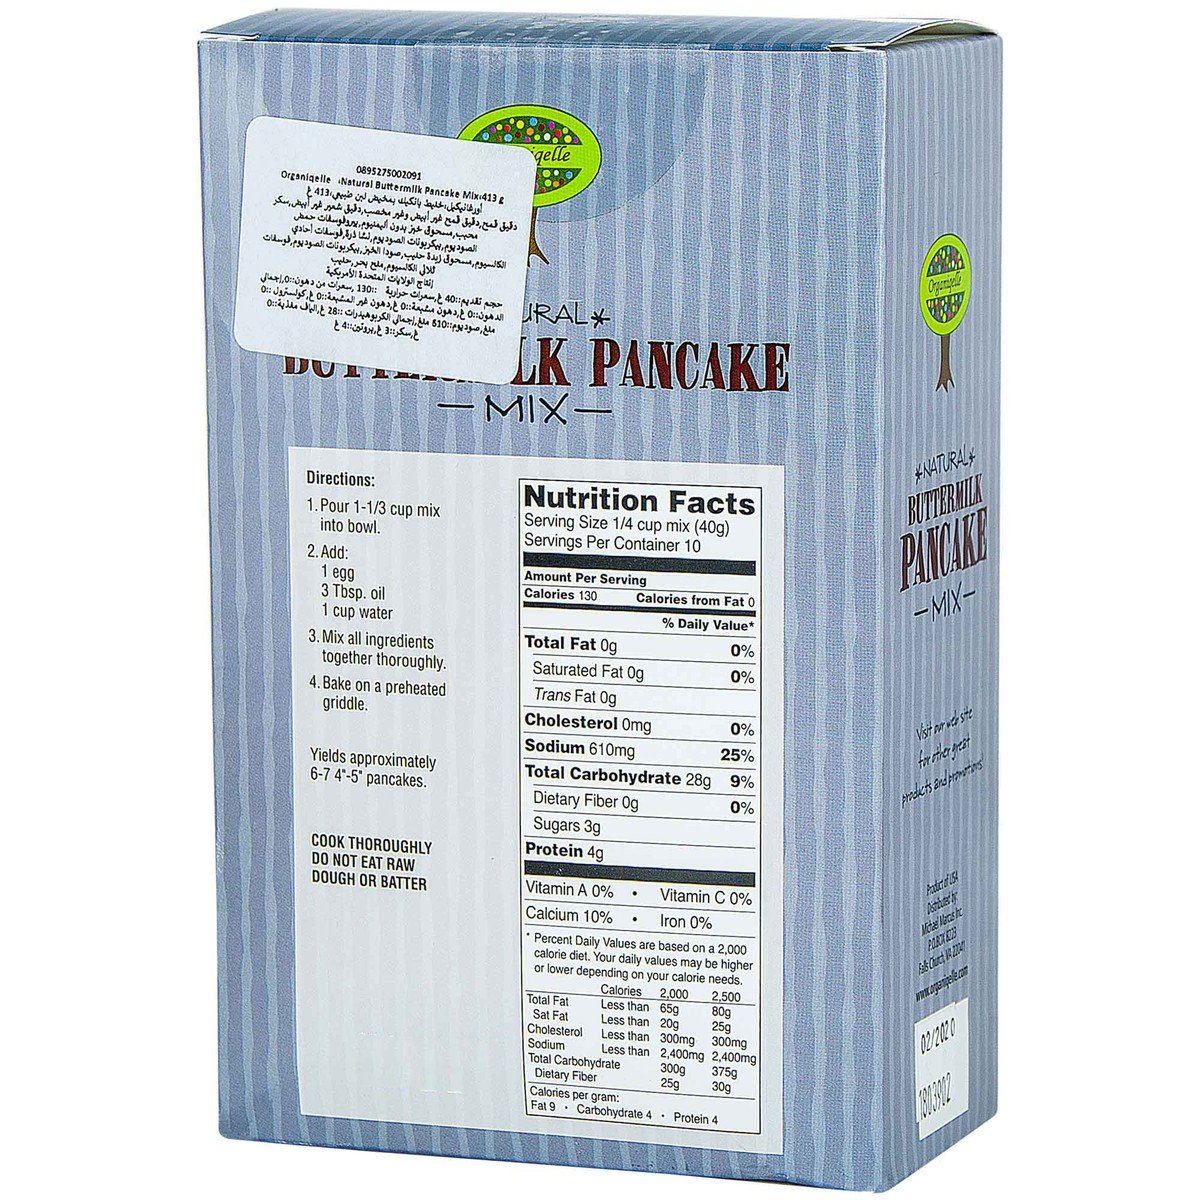 Organiqelle Natural Butter Milk Pancake Mix 413g